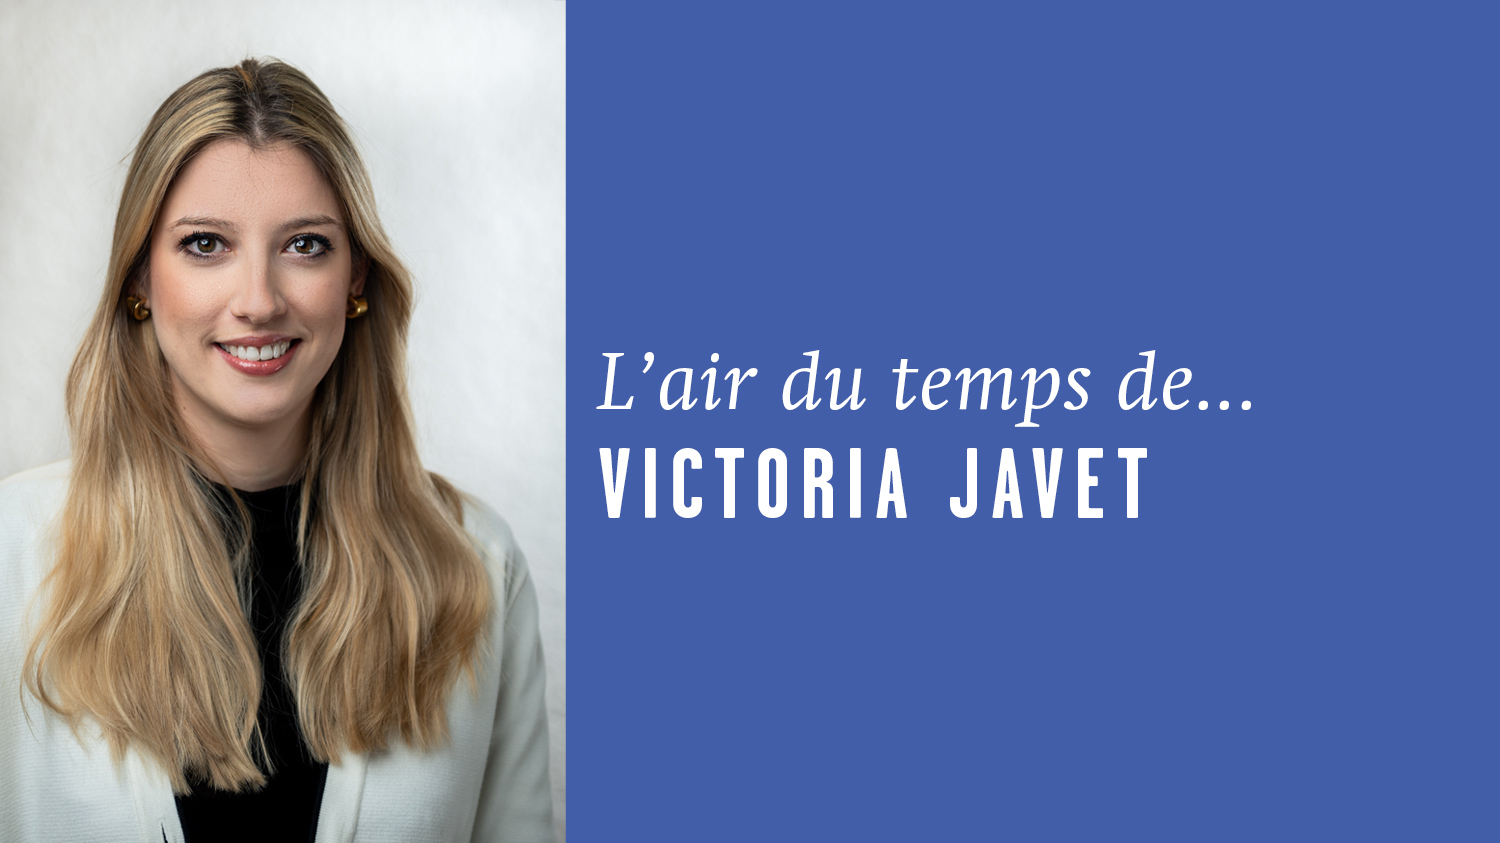 AirDutemps-VictoriaJavet